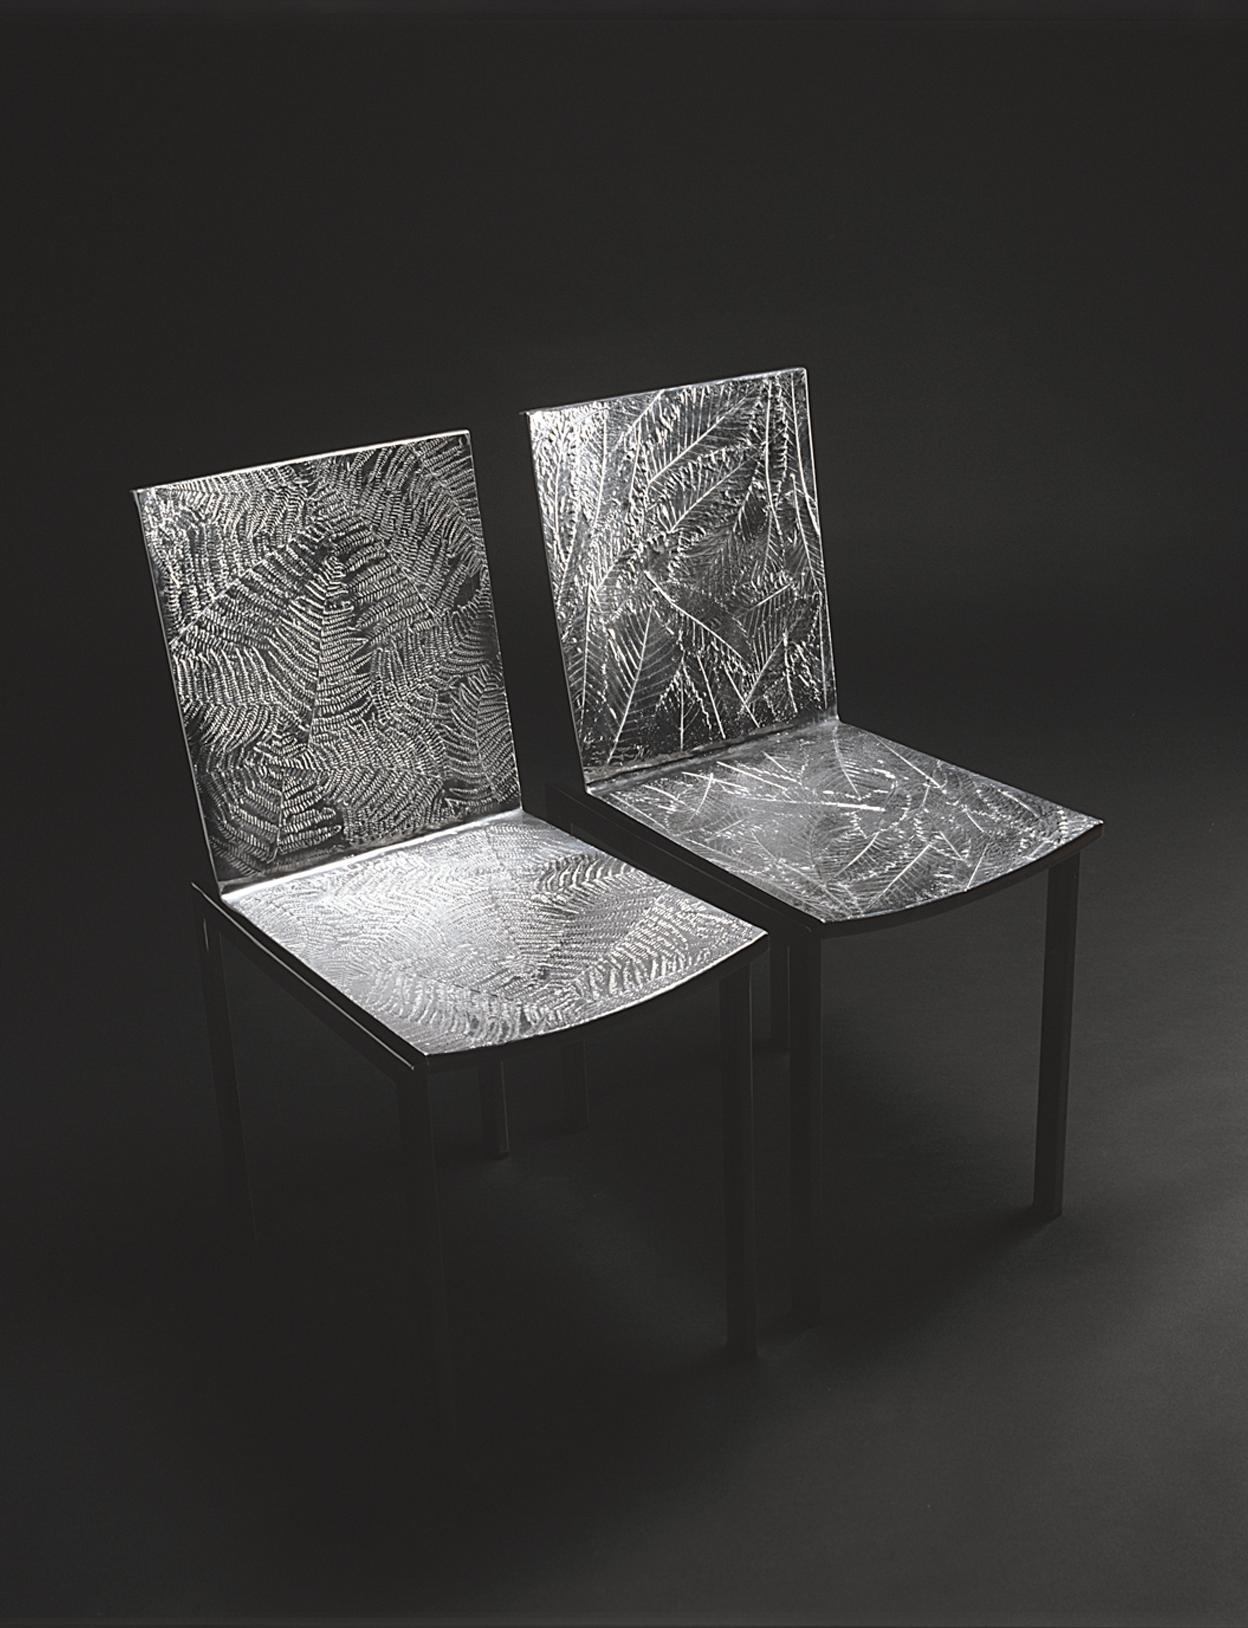 Chaise de salle à manger avec assise en fonte d'aluminium et structure en acier inoxydable brillant. La surface texturée est créée par des panneaux réalisés en moulage d'aluminium avec quatre textures de feuilles différentes : feuille de